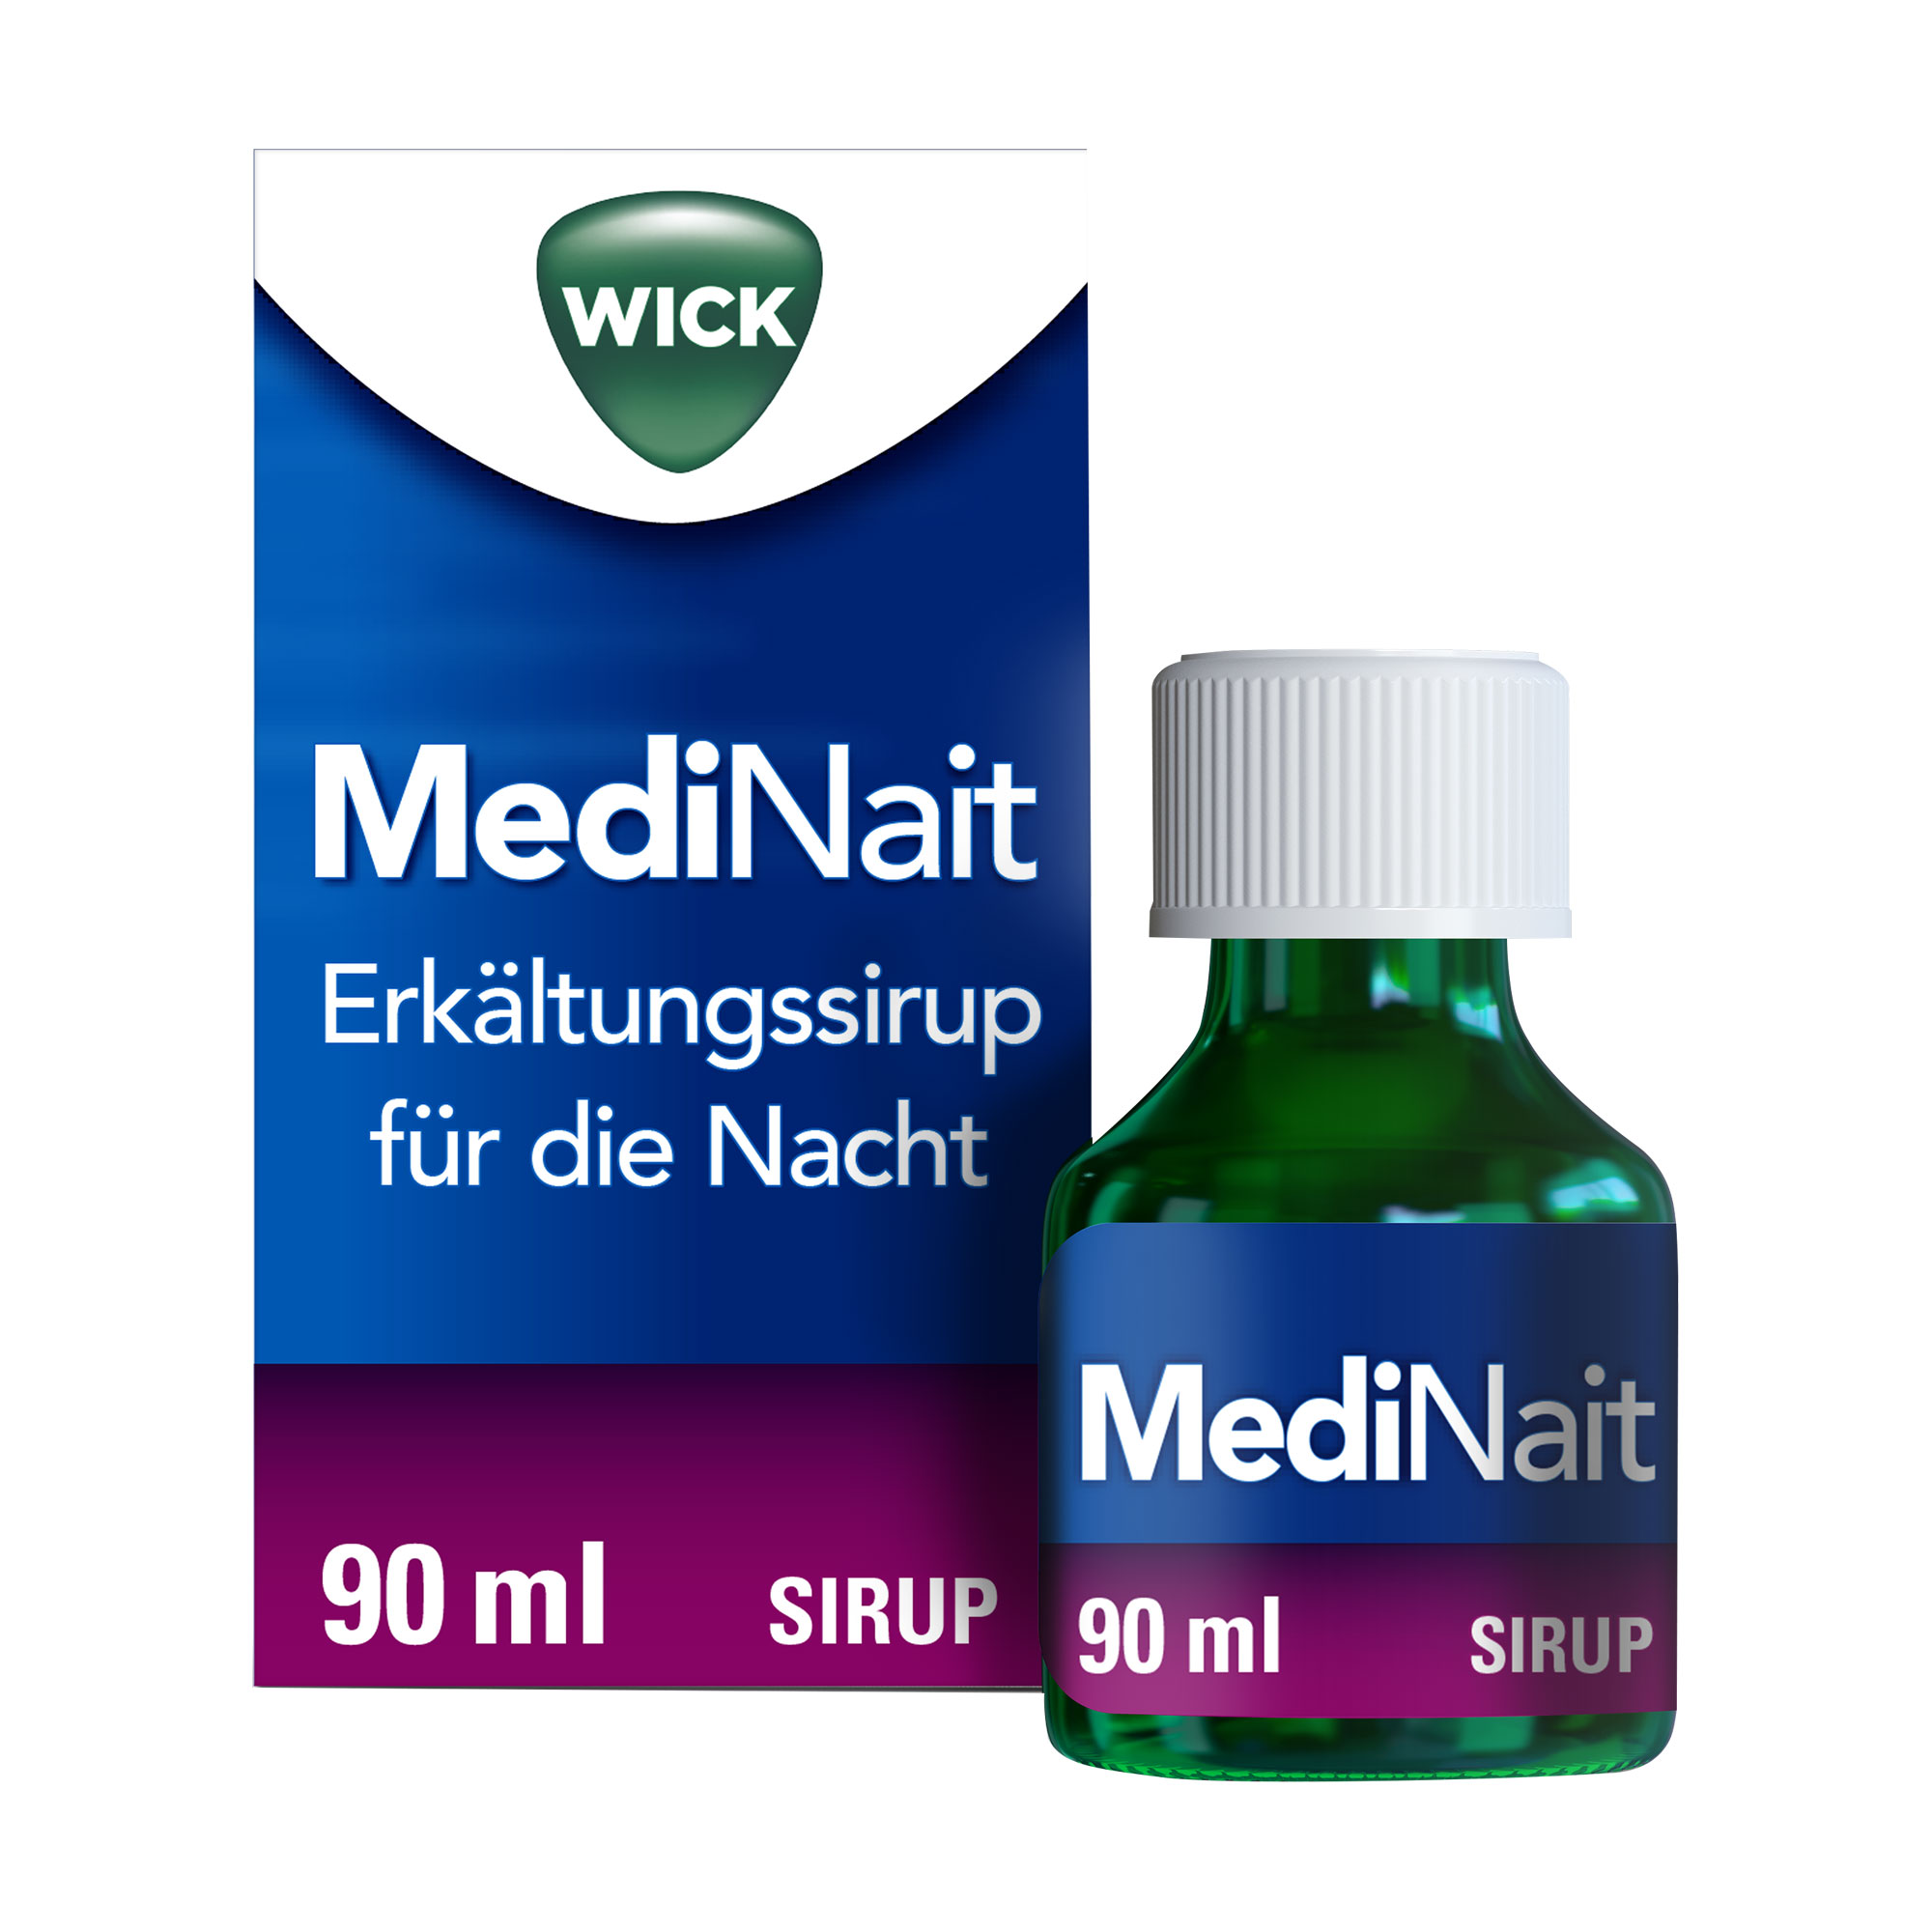 Gegen Beschwerden von Erkältungen und grippalen Infekten in der Nacht. Der Wick MediNait Erkältungssirup unterstützt bei Husten, Fieber, Schnupfen und Schmerzen.